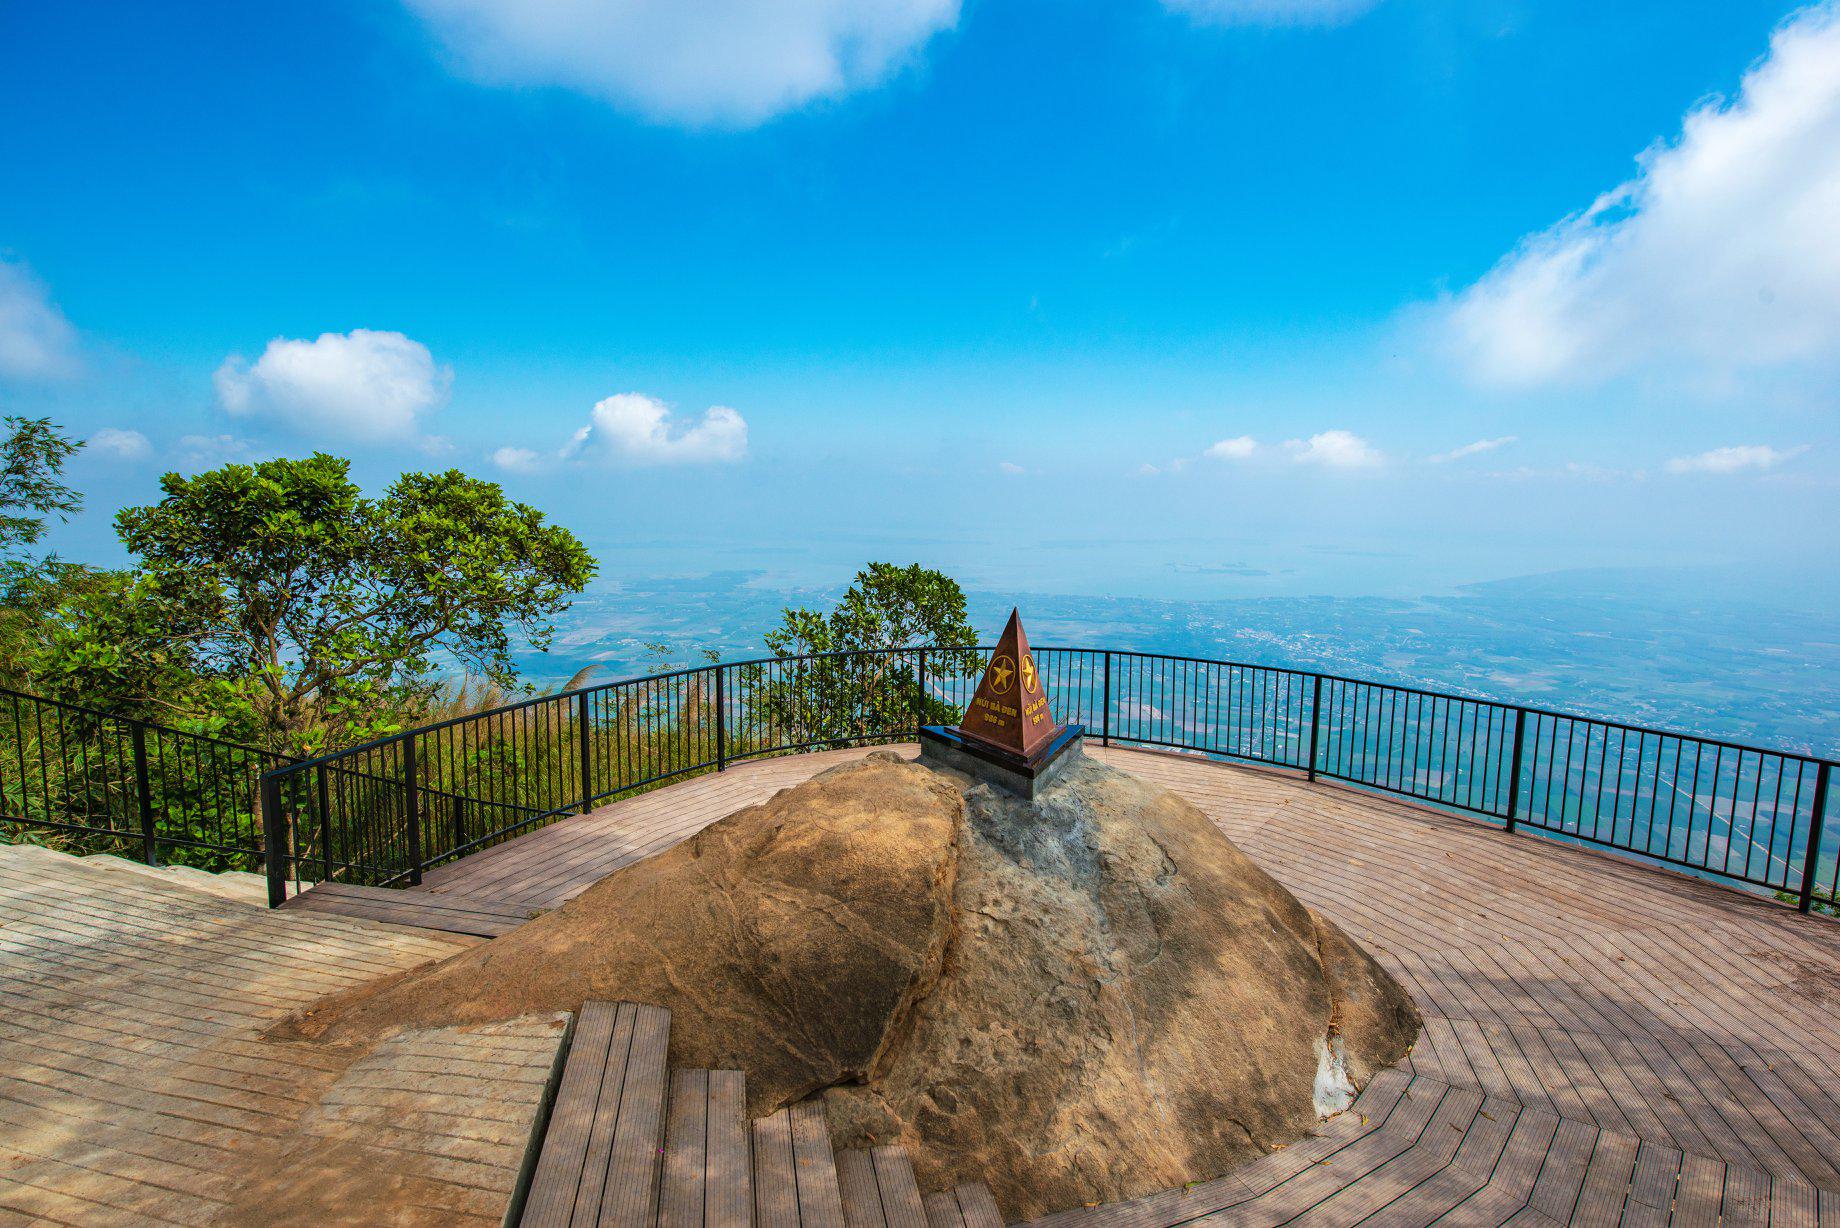 Núi Bà Đen - Điểm tham quan tâm linh nổi tiếng tại Tây Ninh